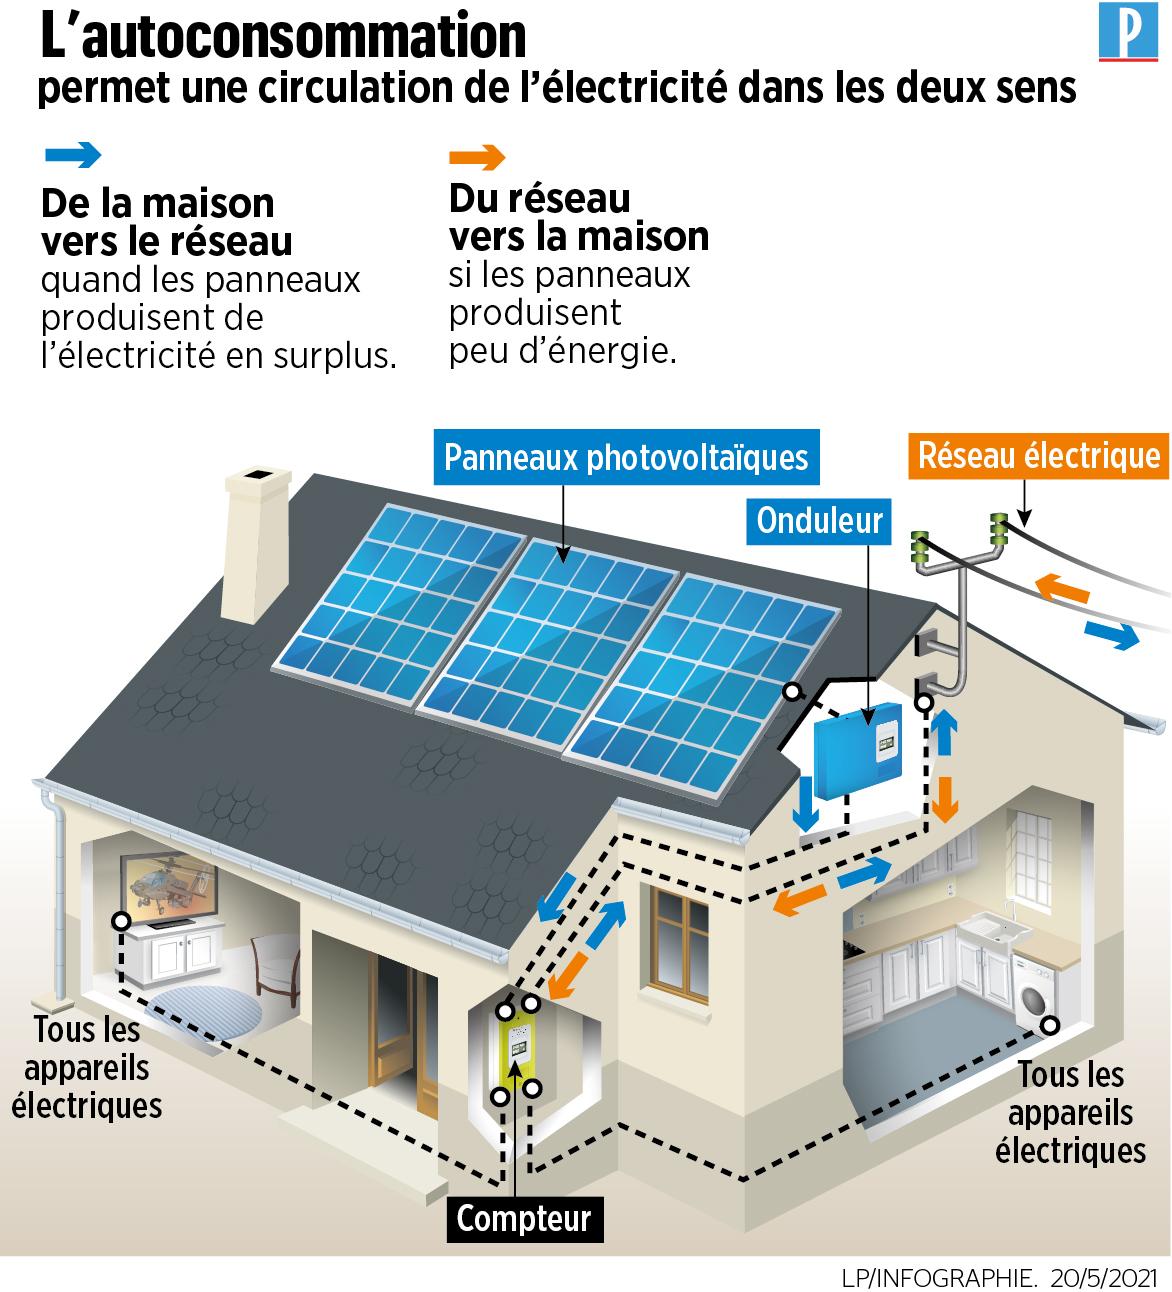 Electricité : le cap des 100 000 autoconsommateurs franchi en France 